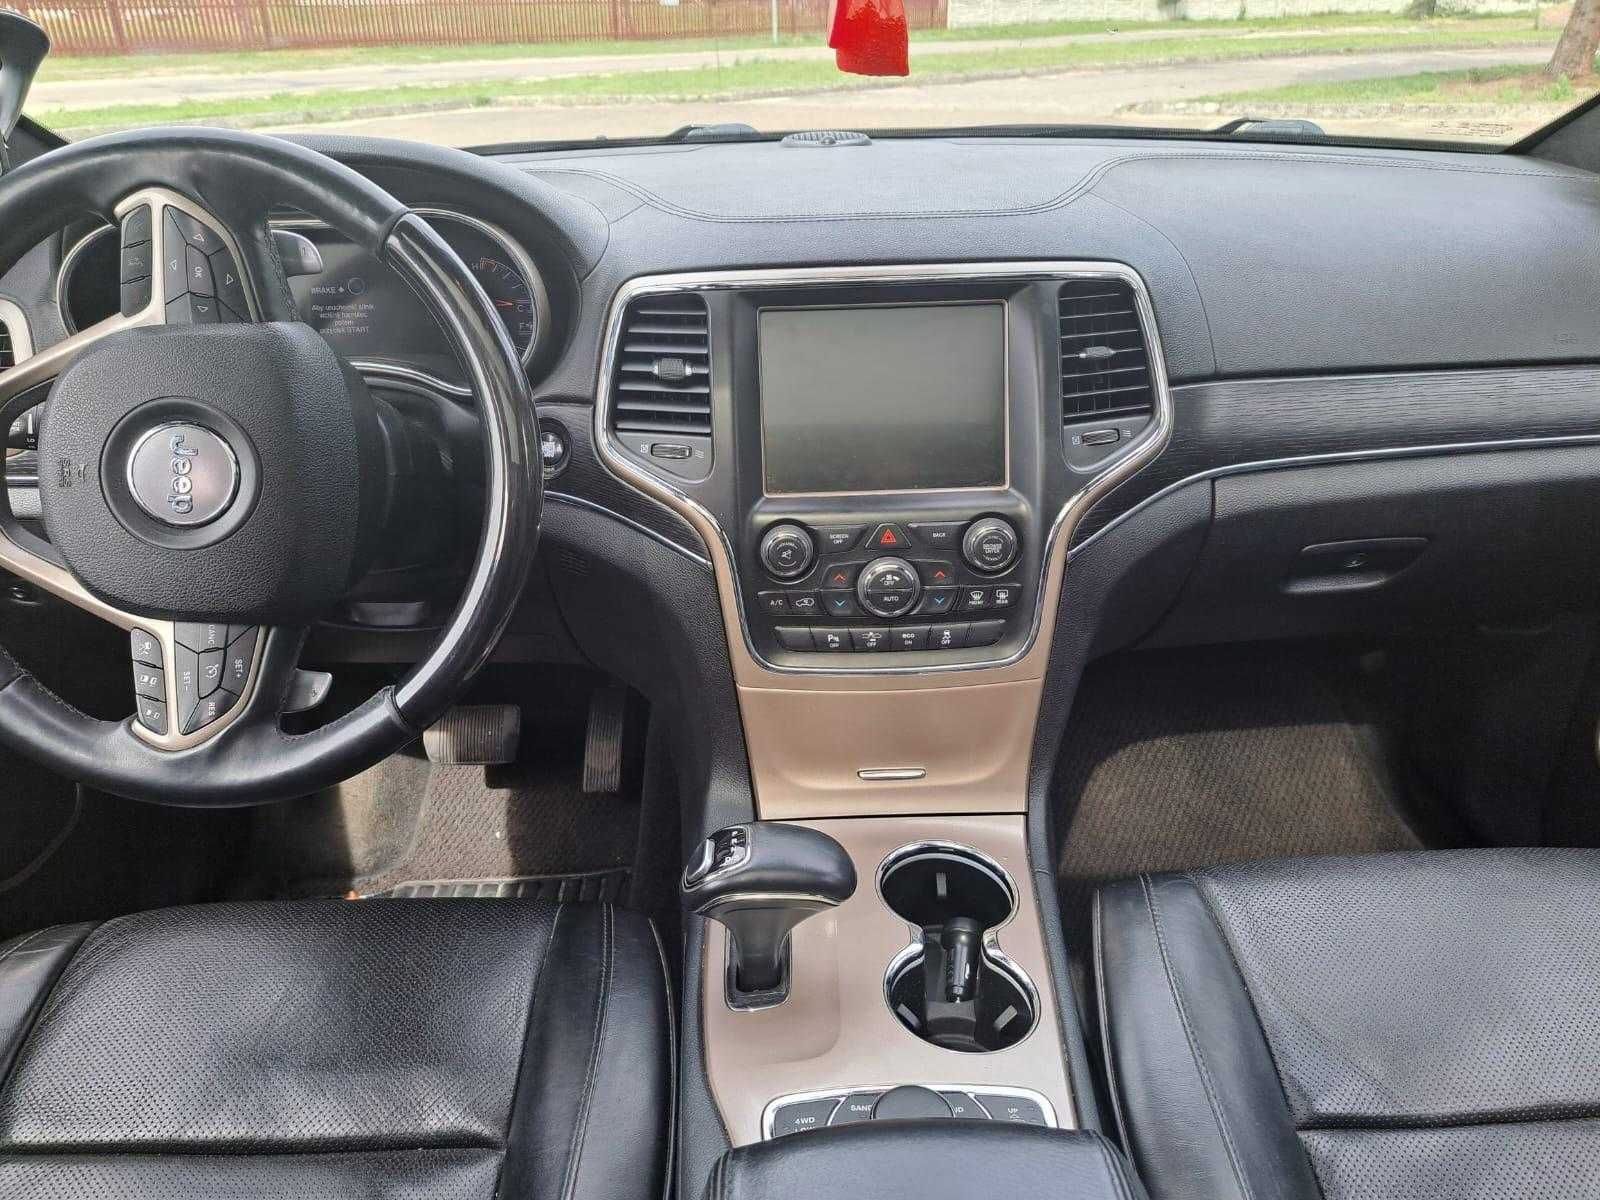 Jeep Cherokee 3,0 V6 TDI 2015 rok